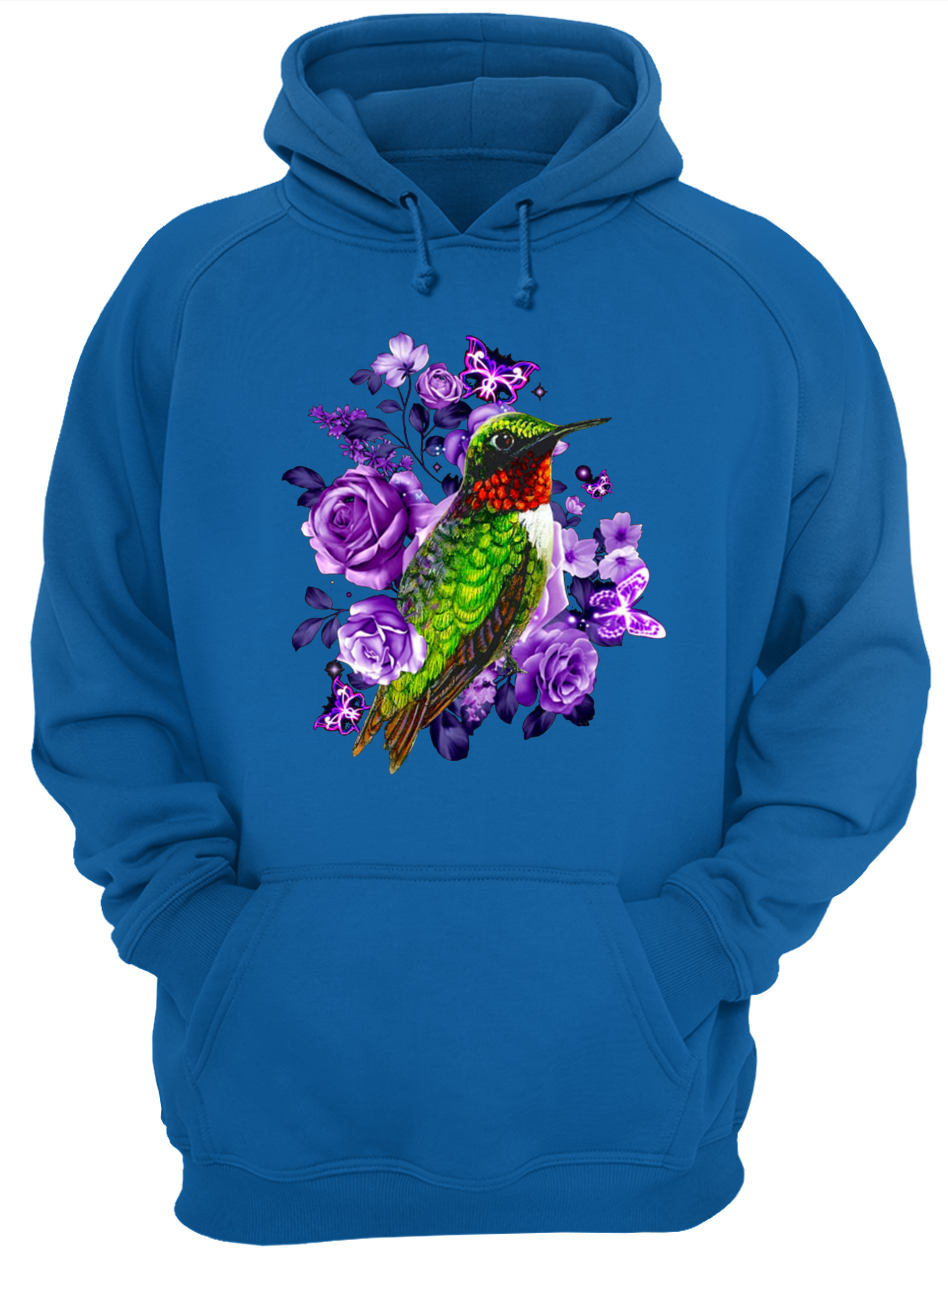 Hummingbird and purple rose flower hoodie